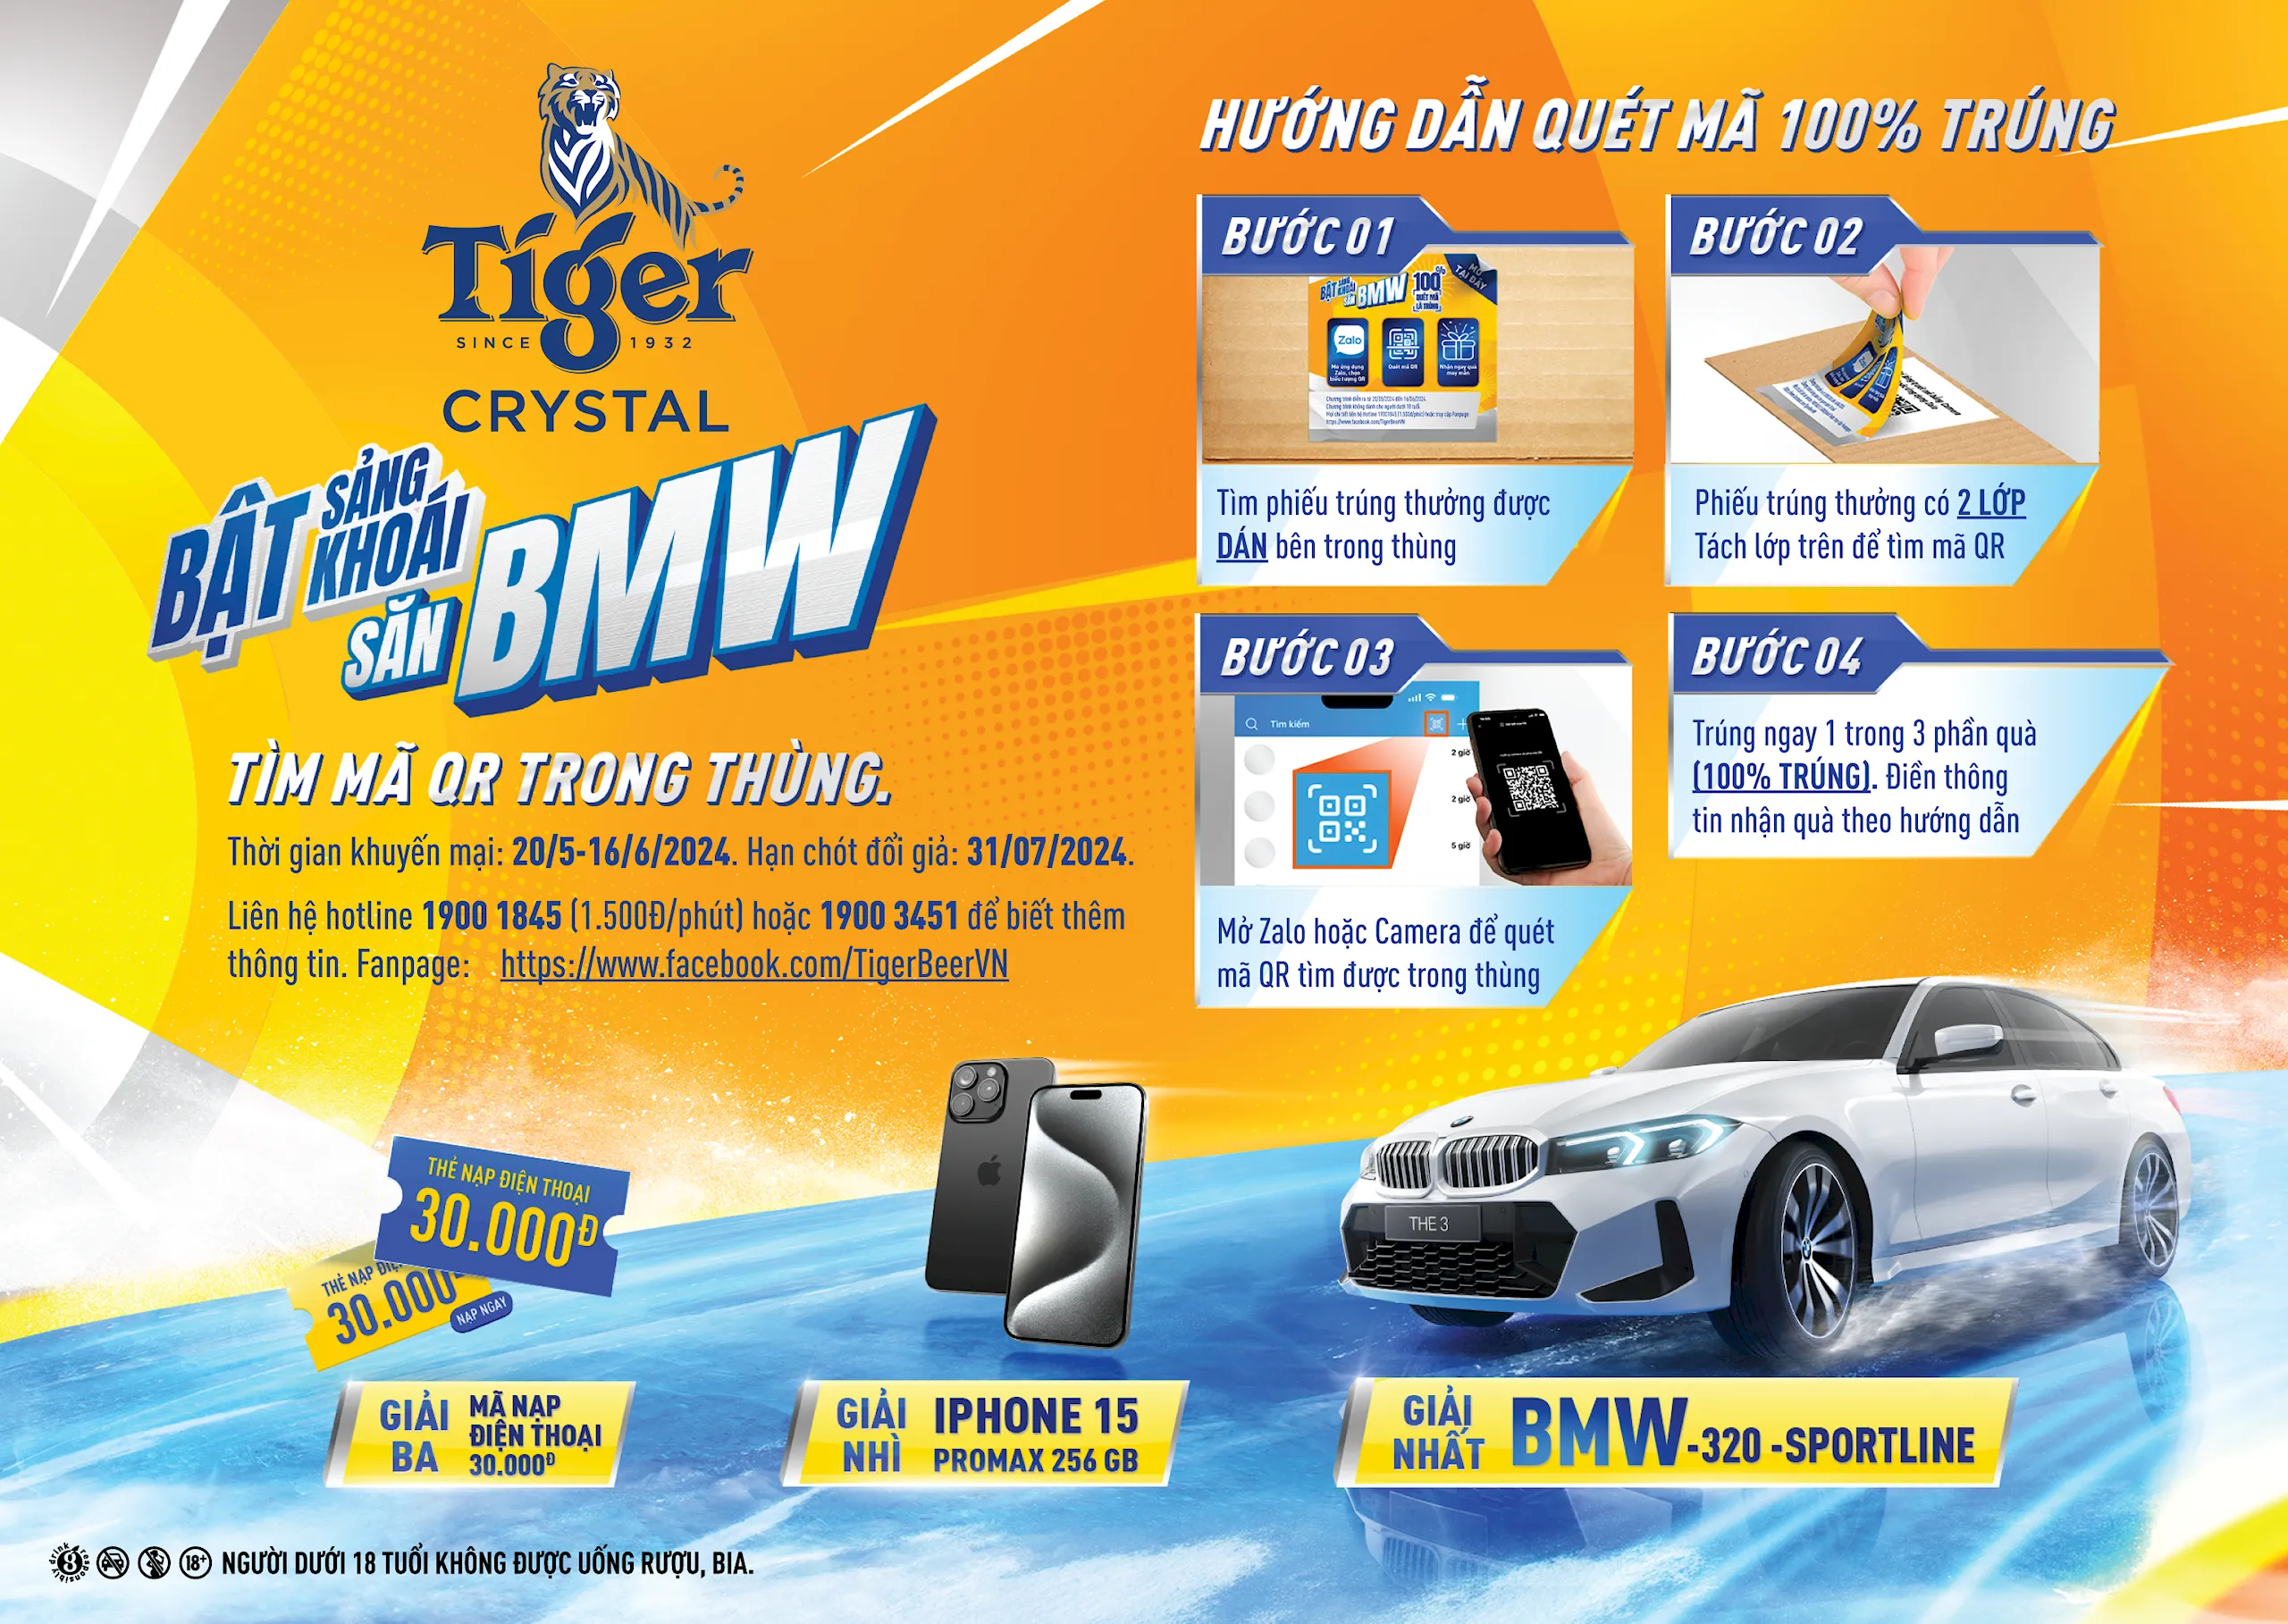 Tiger Crystal tung chương trình khuyến mại “Bật sảng khoái, săn BMW” với tỉ lệ trúng thưởng 100%